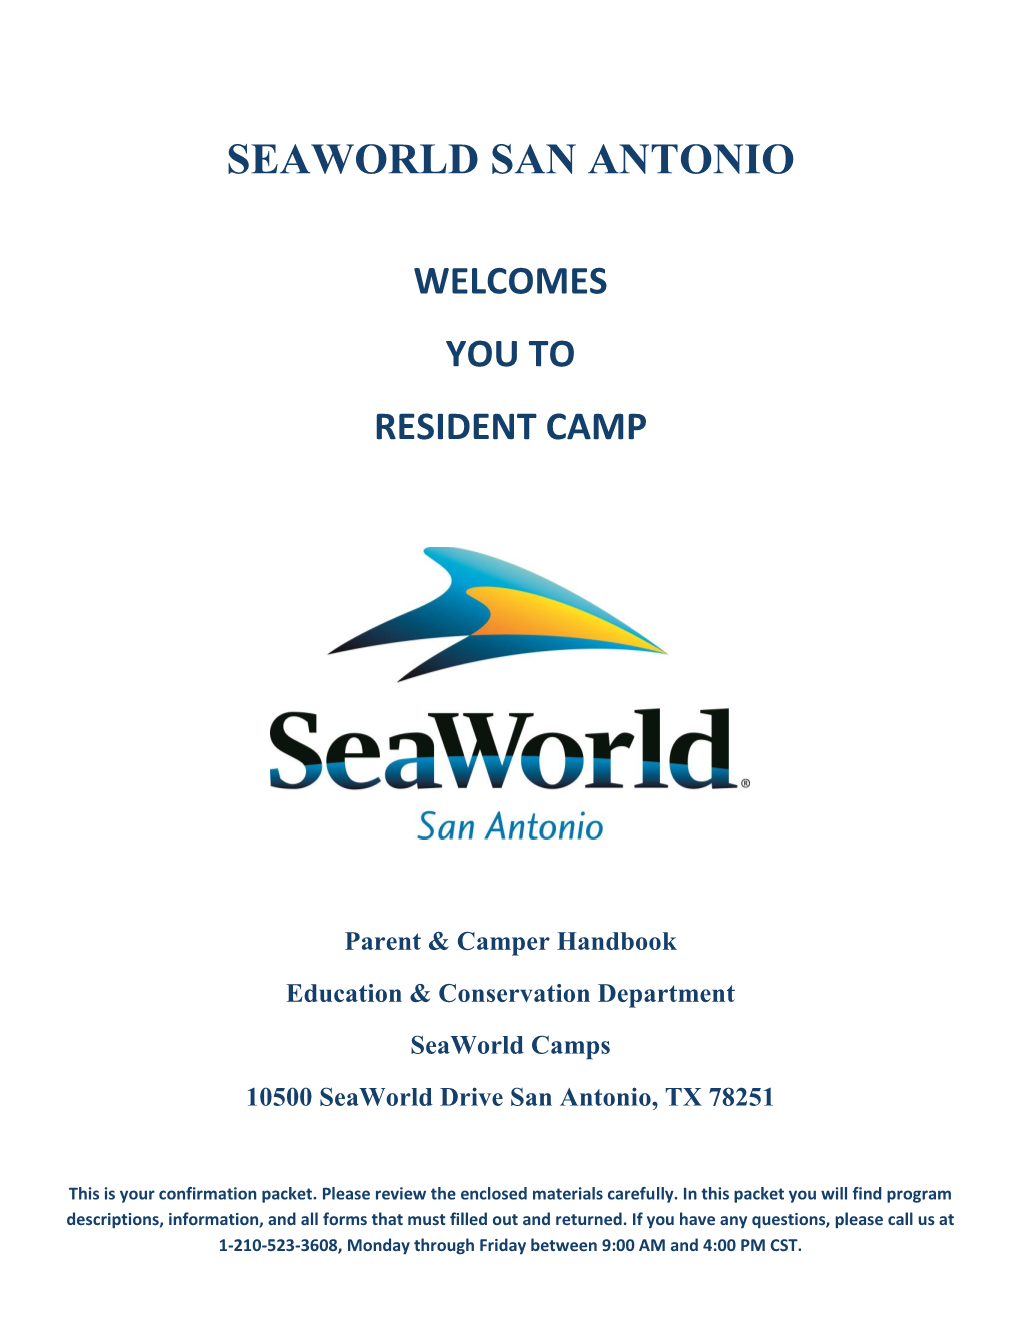 Seaworld San Antonio